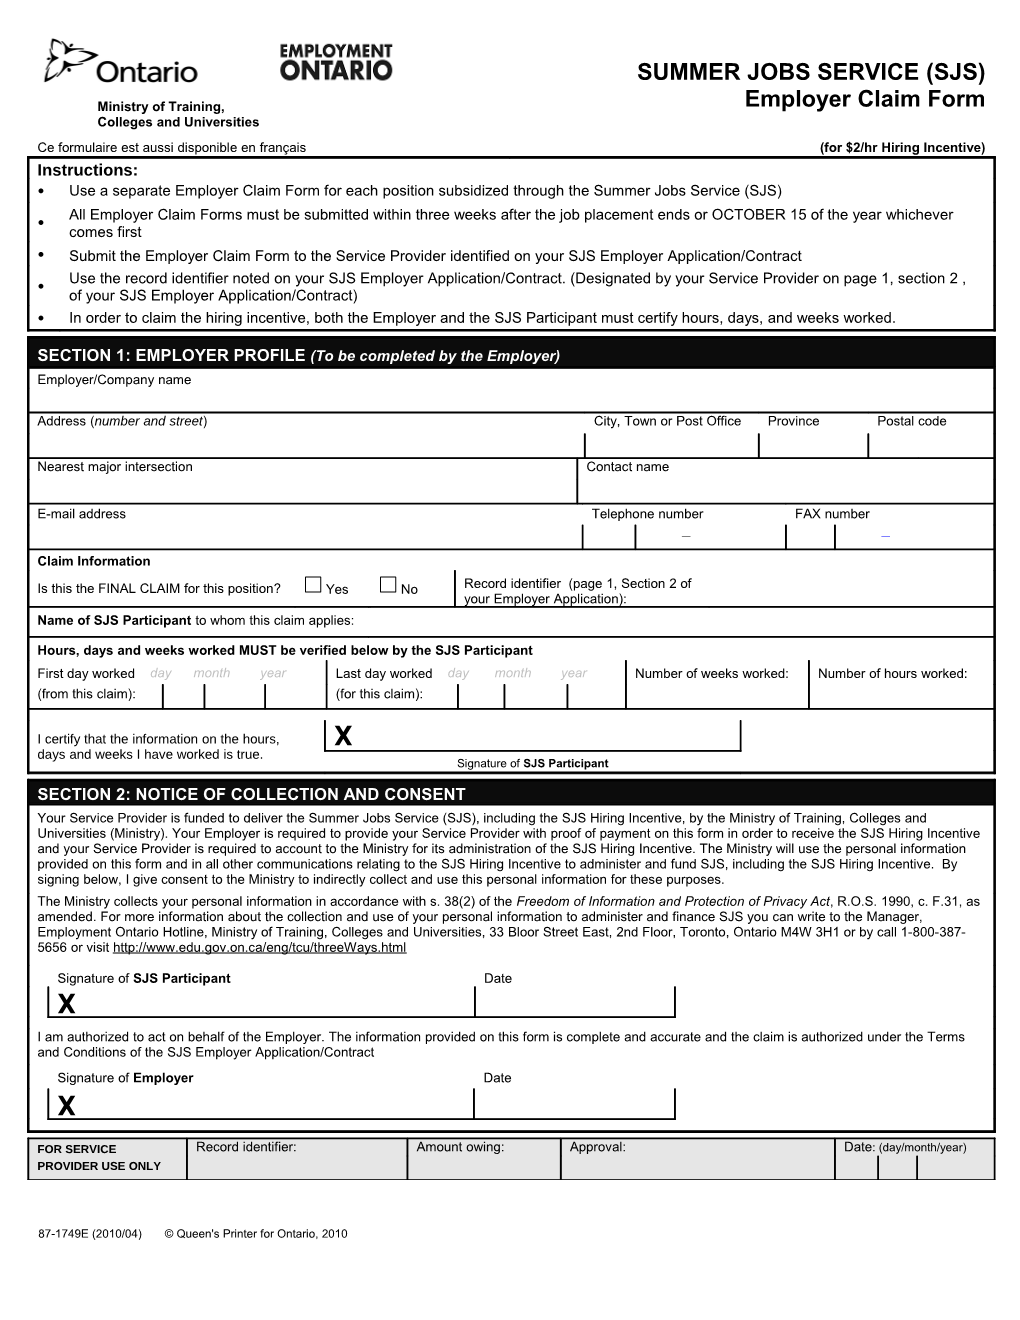 87-1749E-SJS-Employer Claim Form